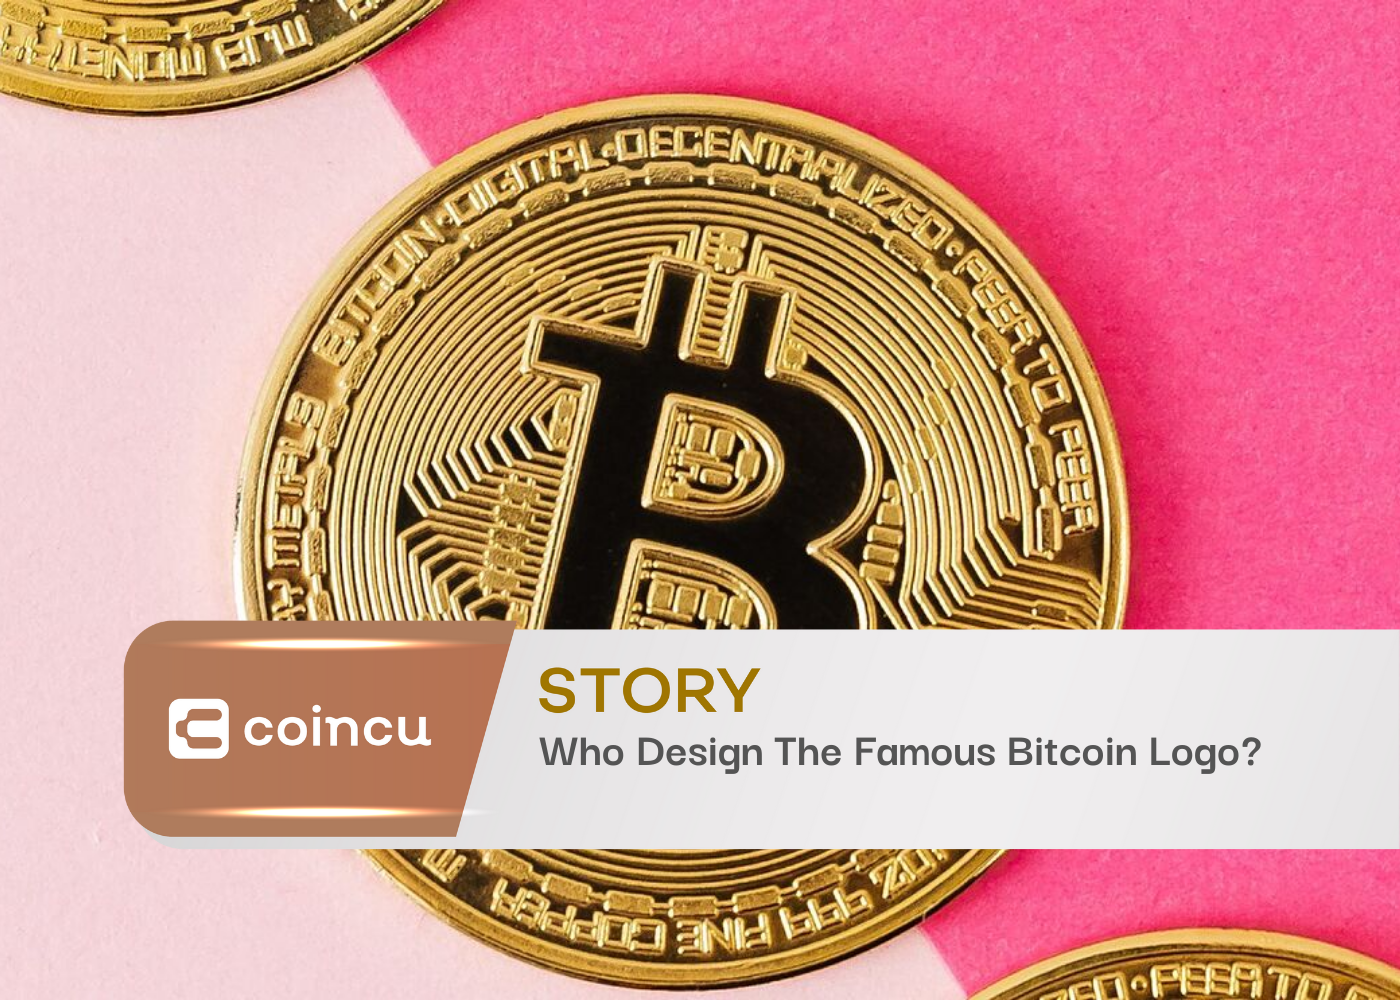 Who Design The Famous Bitcoin Logo?